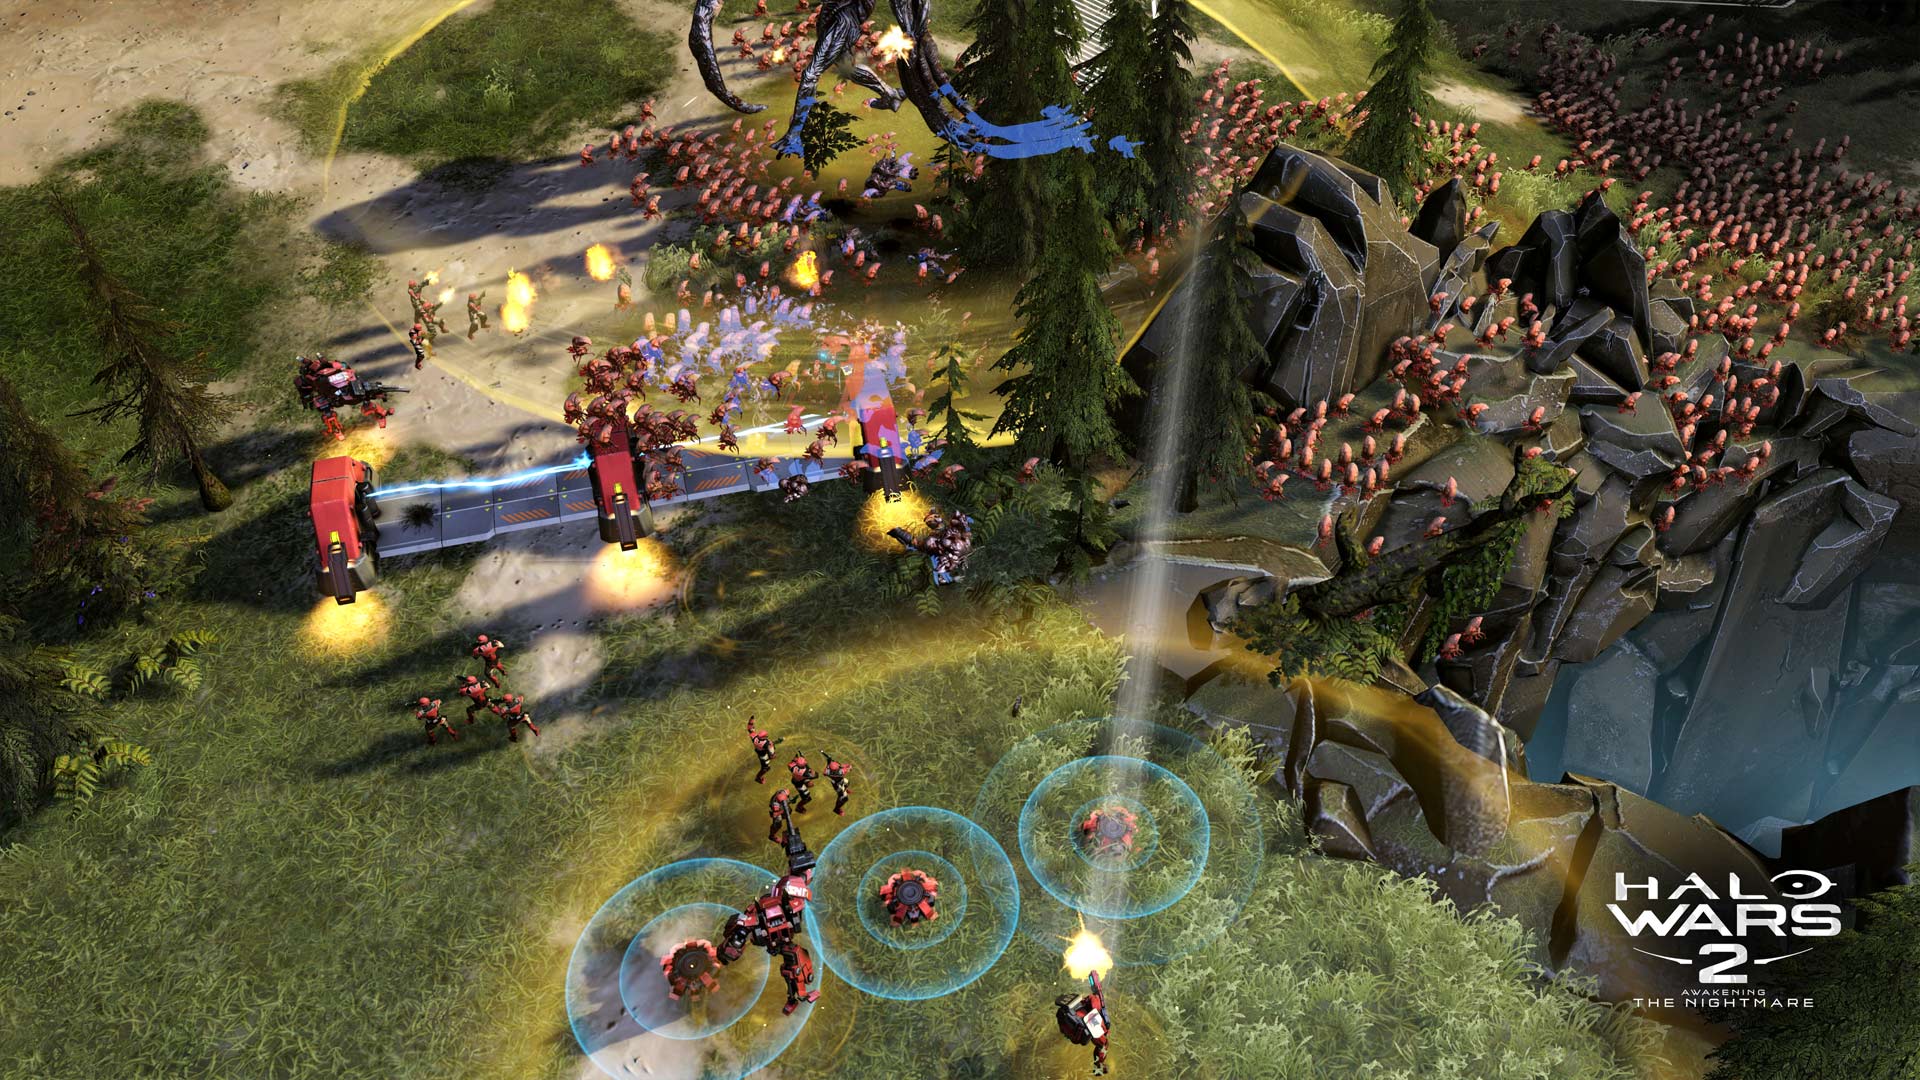 Halo Wars 2: Awakening the Nightmare Screenshot